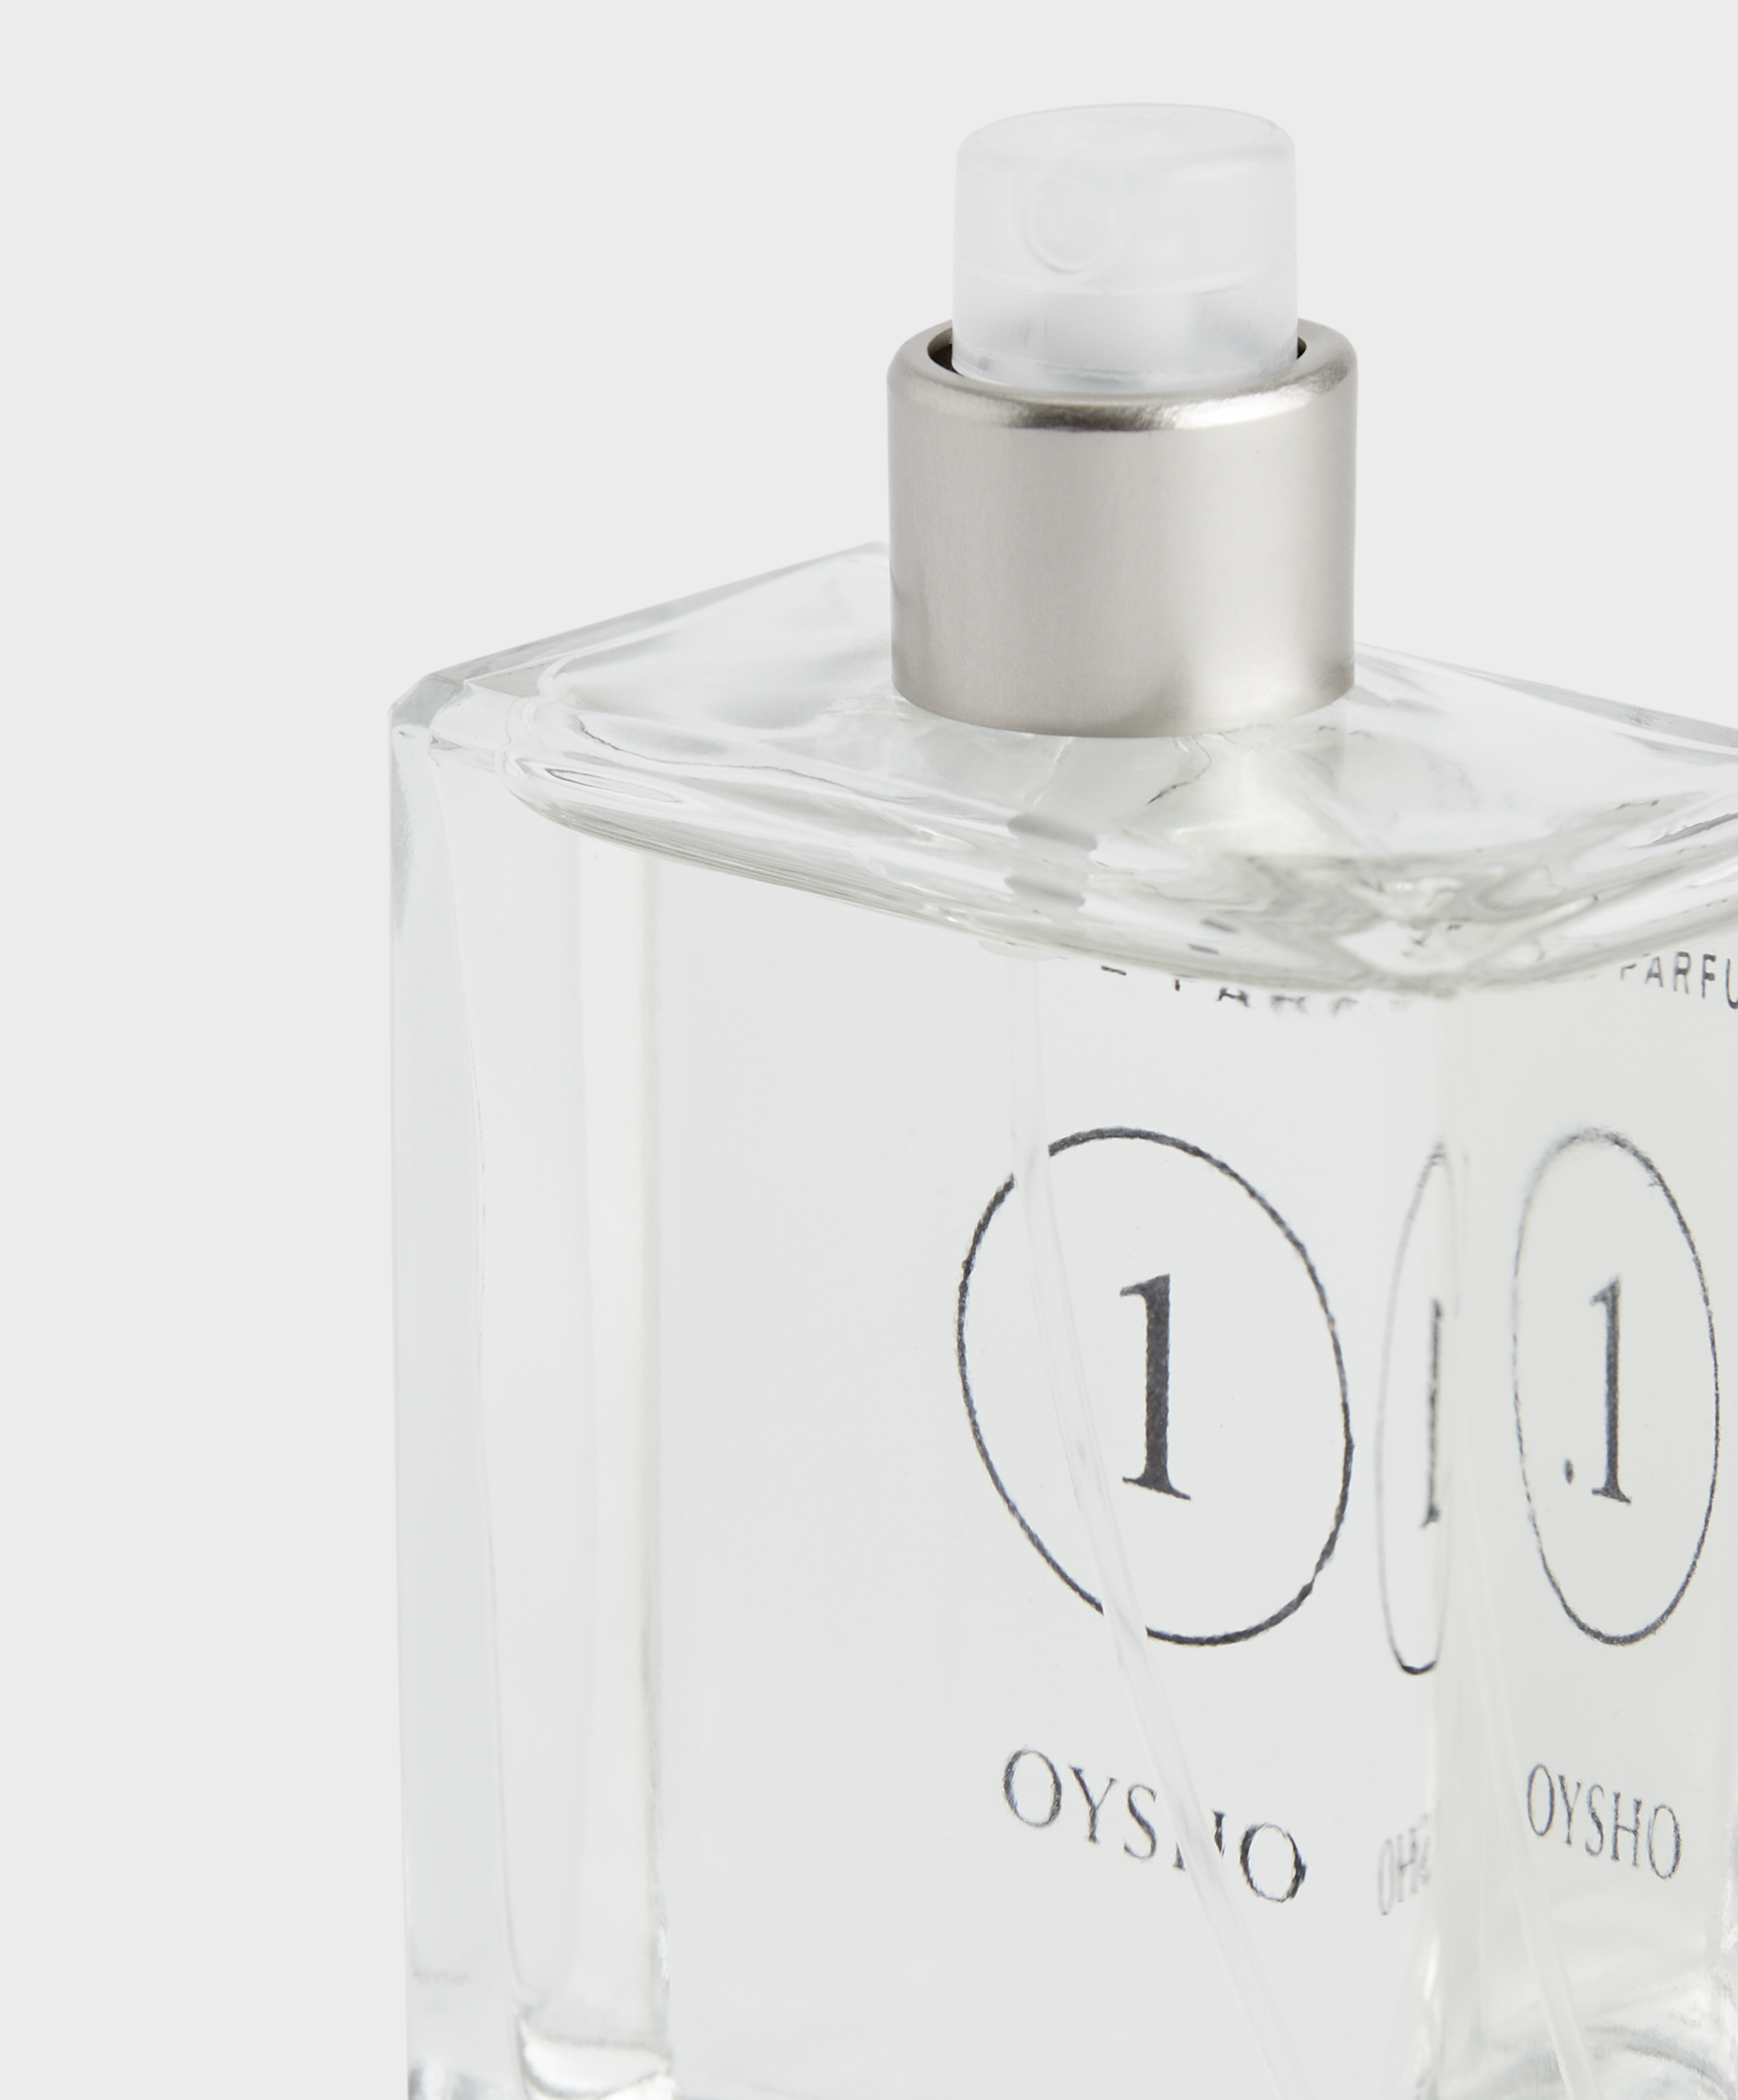 købmand de Kom op 1 Christmas Edition Eau de Parfum | OYSHO Portugal